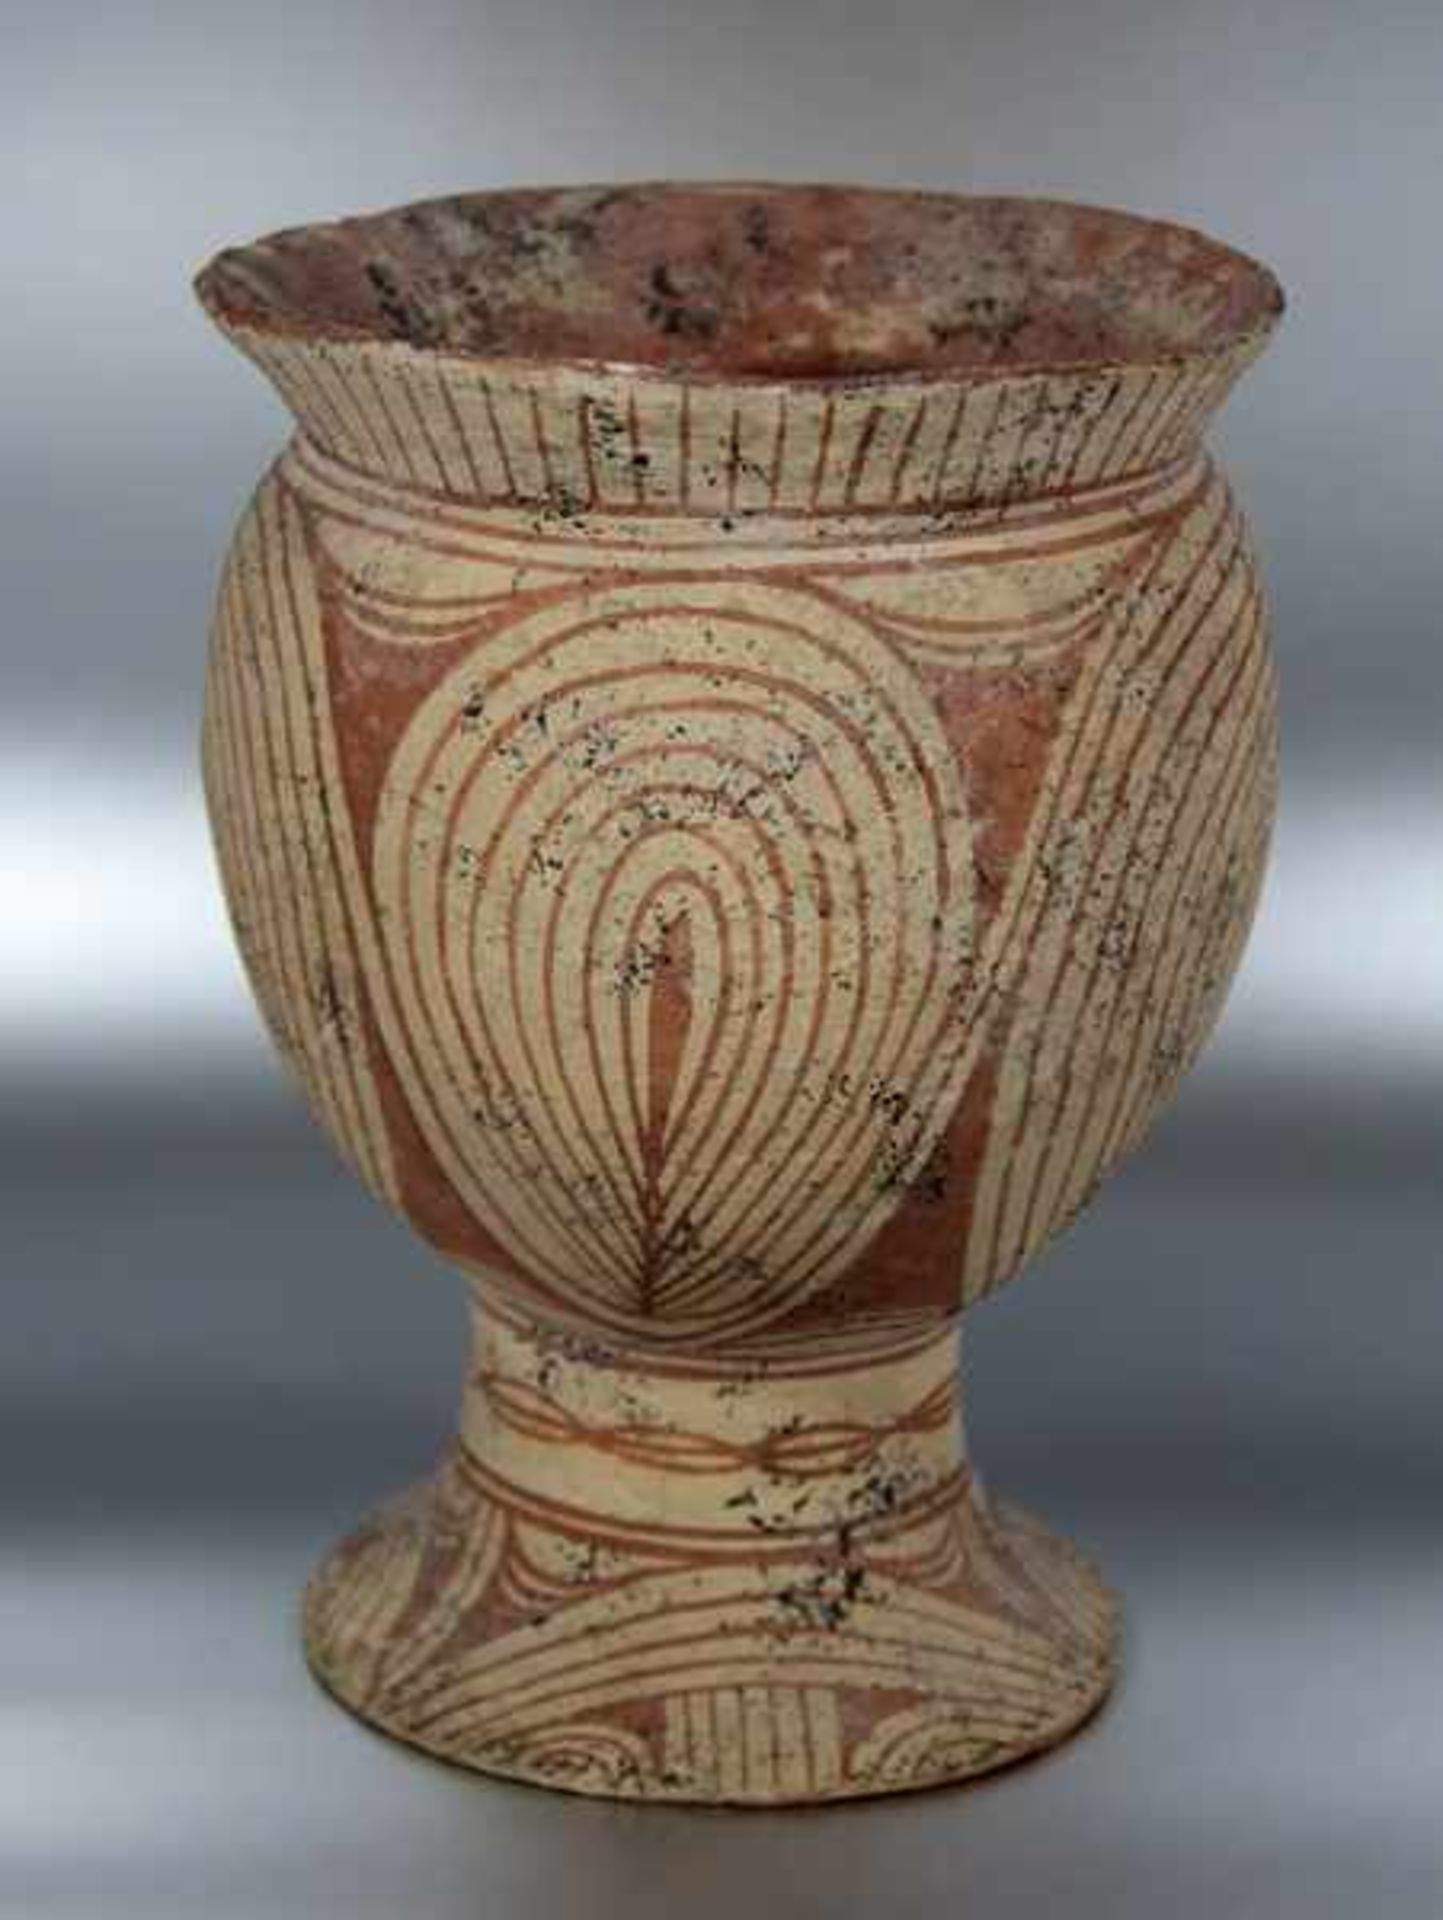 Ban-Chiang-Vaseca. 2000-1000 Jahre v. Chr., Thailand, Ban-Chiang, bauchige Keramikvase mit